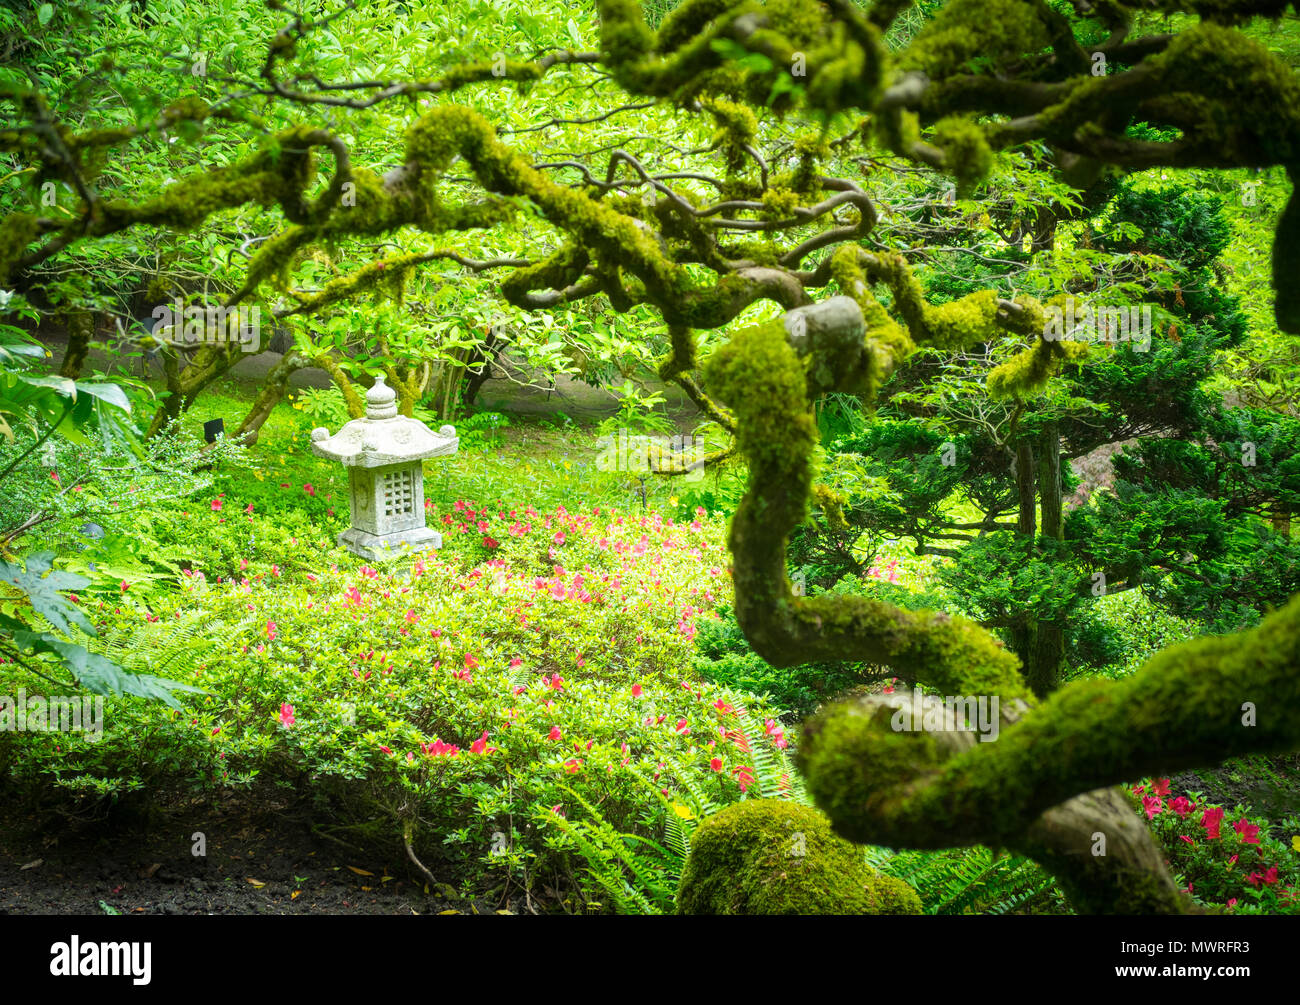 Branches couvertes de mousses, érables du Japon, et une lanterne de pierre japonais ornent le jardin japonais à Butchart Gardens en été. Brentwood Bay, Canada. Banque D'Images